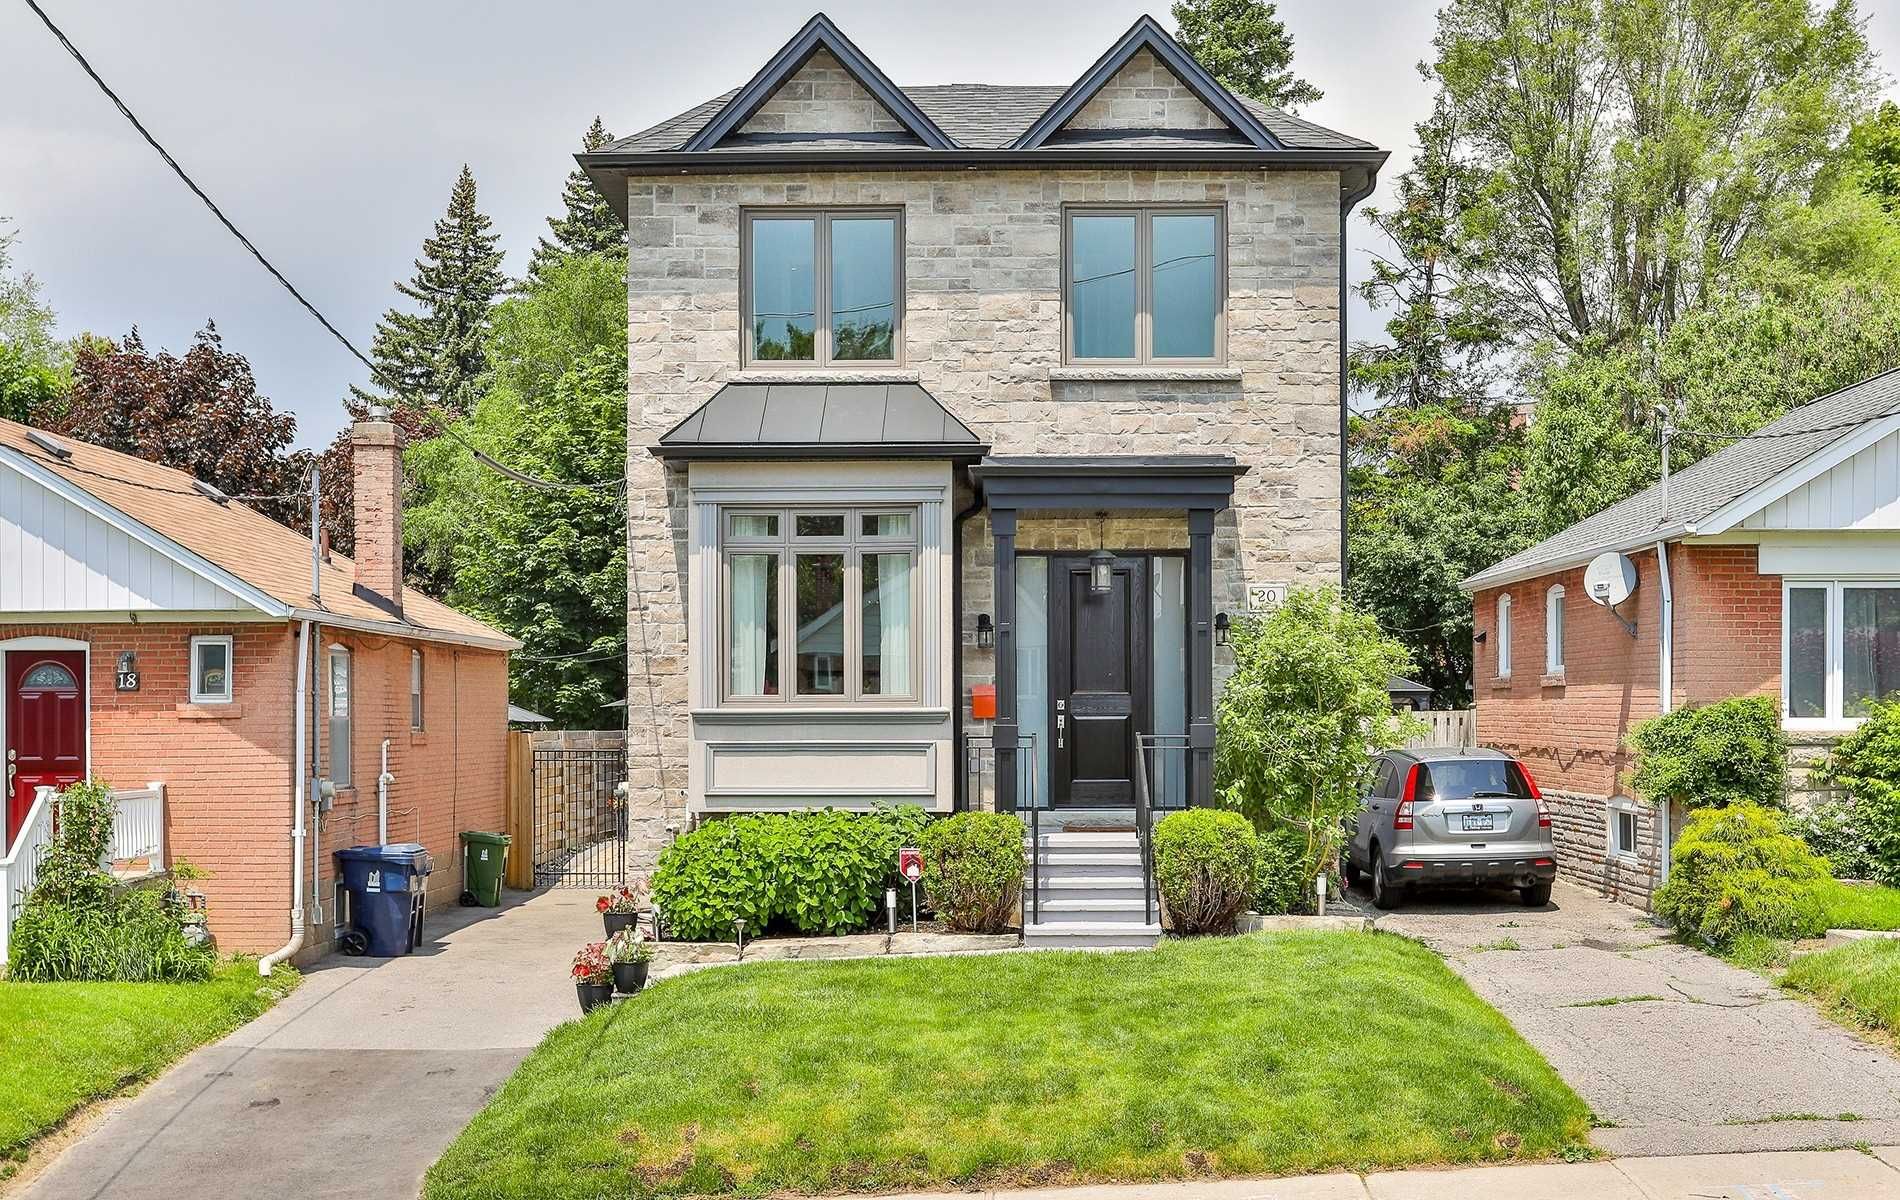 Main Photo: 20 Galbraith Avenue in Toronto: O'Connor-Parkview House (2-Storey) for sale (Toronto E03)  : MLS®# E4796671